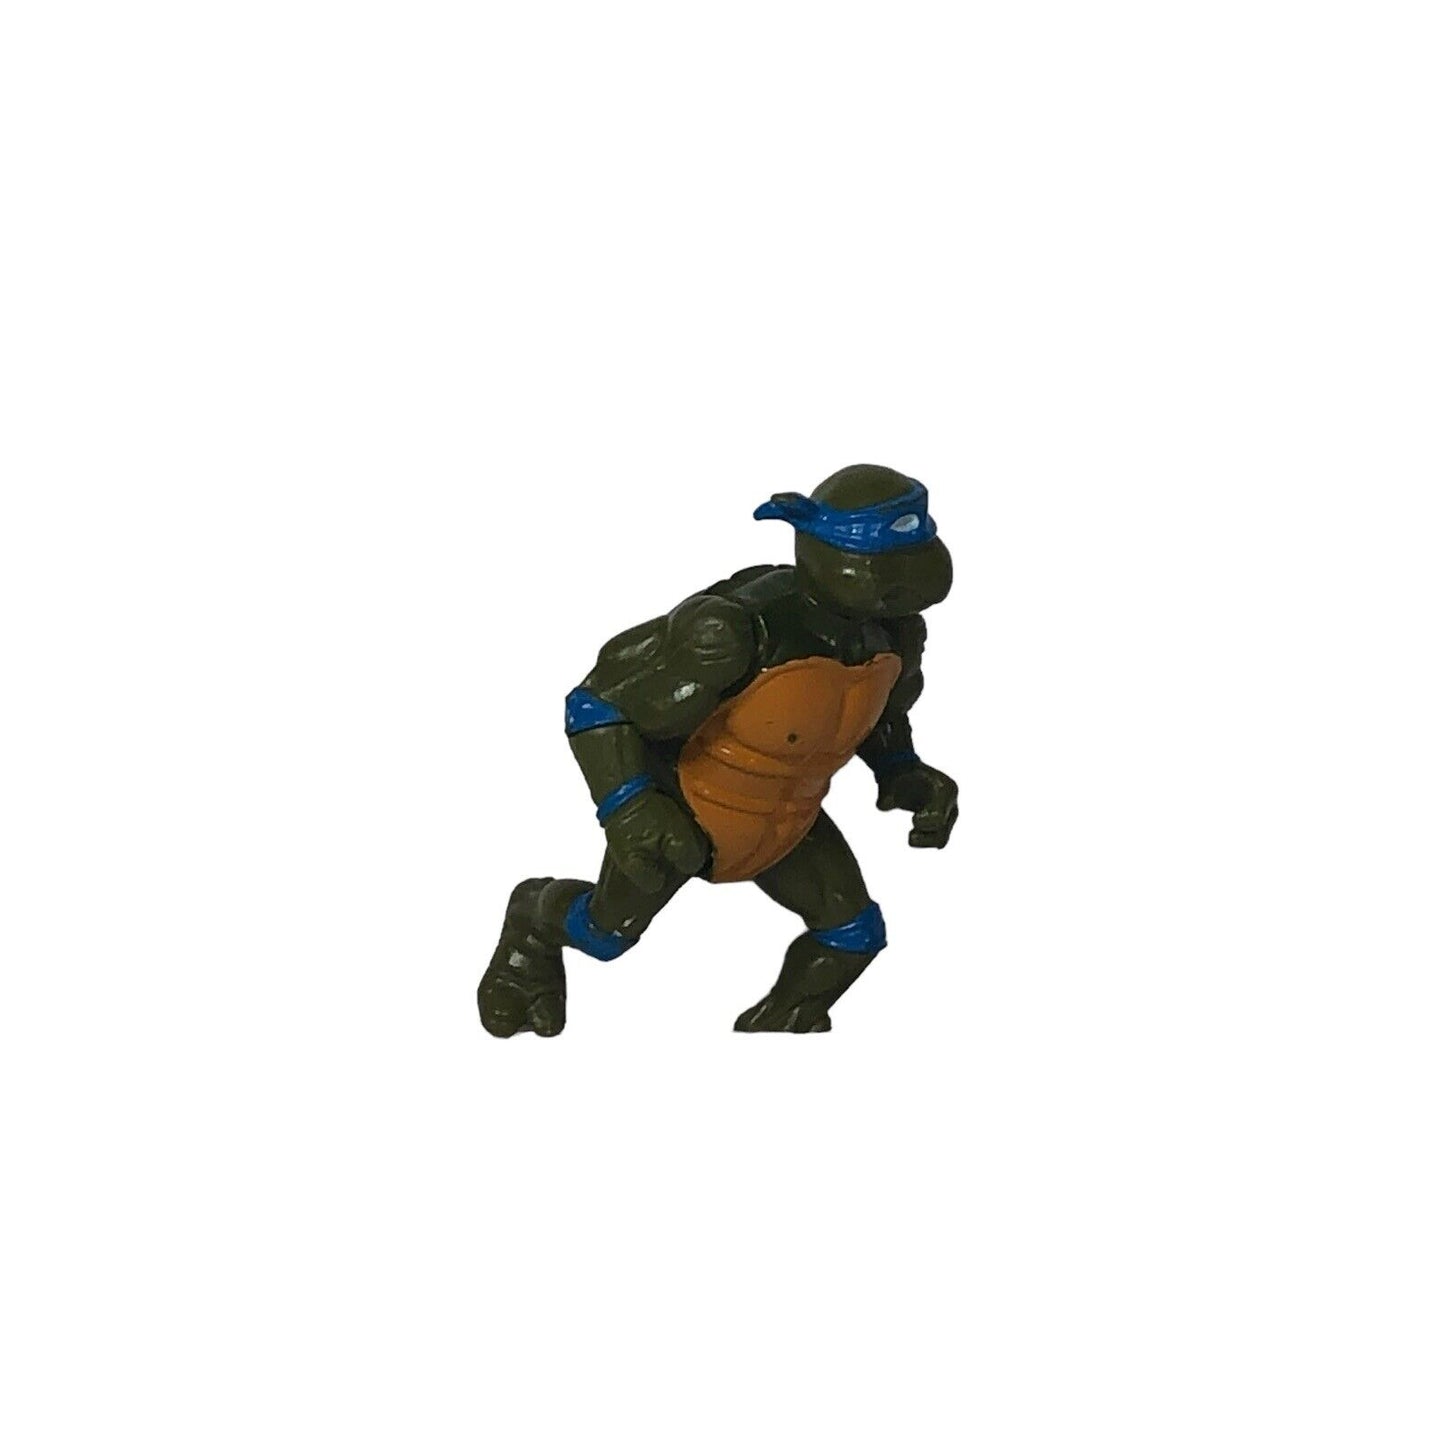 Vintage 1988 Teenage Mutant Ninja Turtles TMNT Leonardo Action Figure Playmates